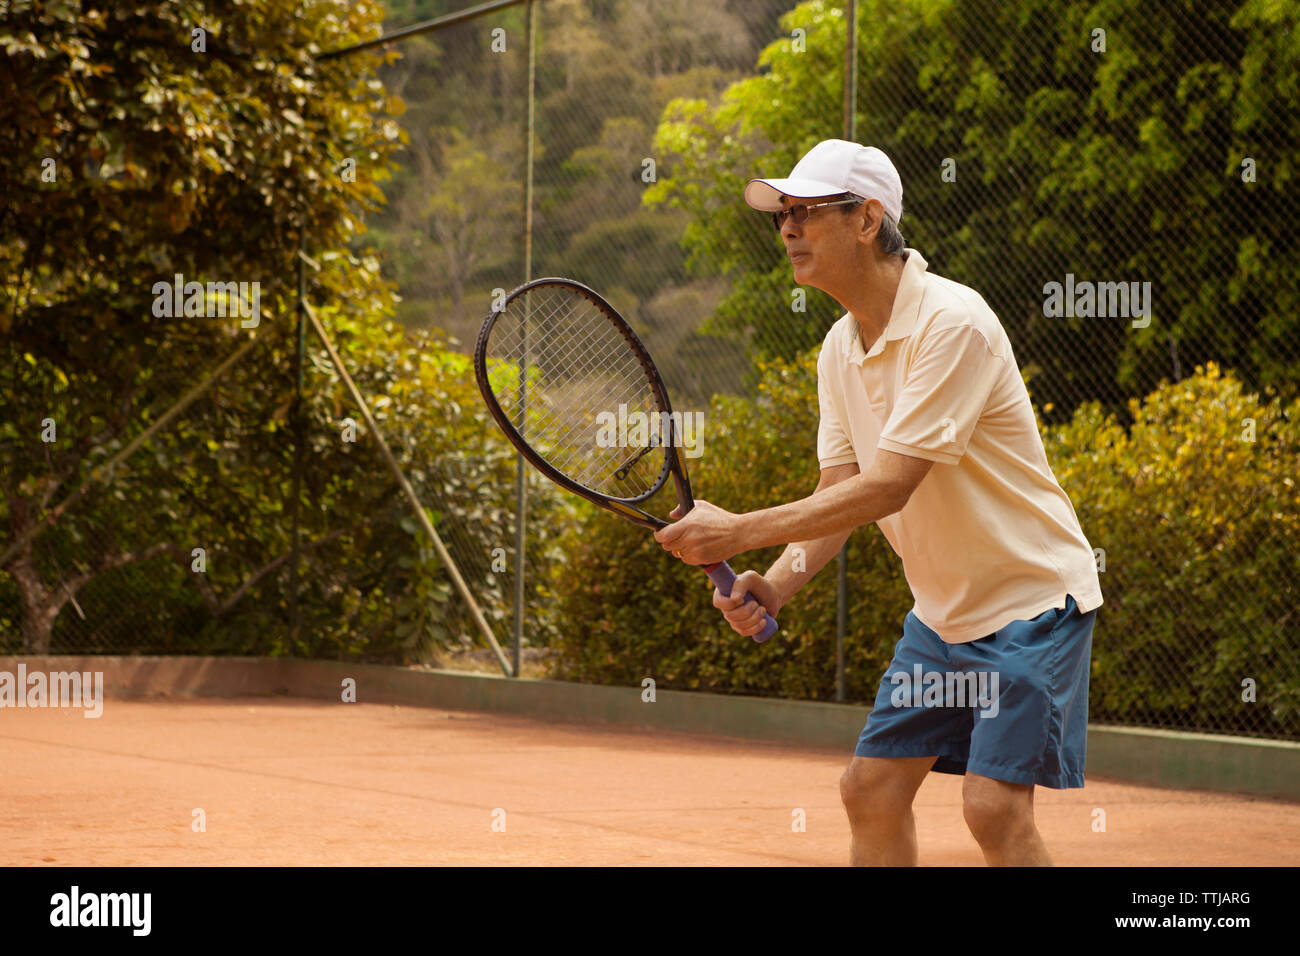 Senior man playing tennis at court Stock Photo